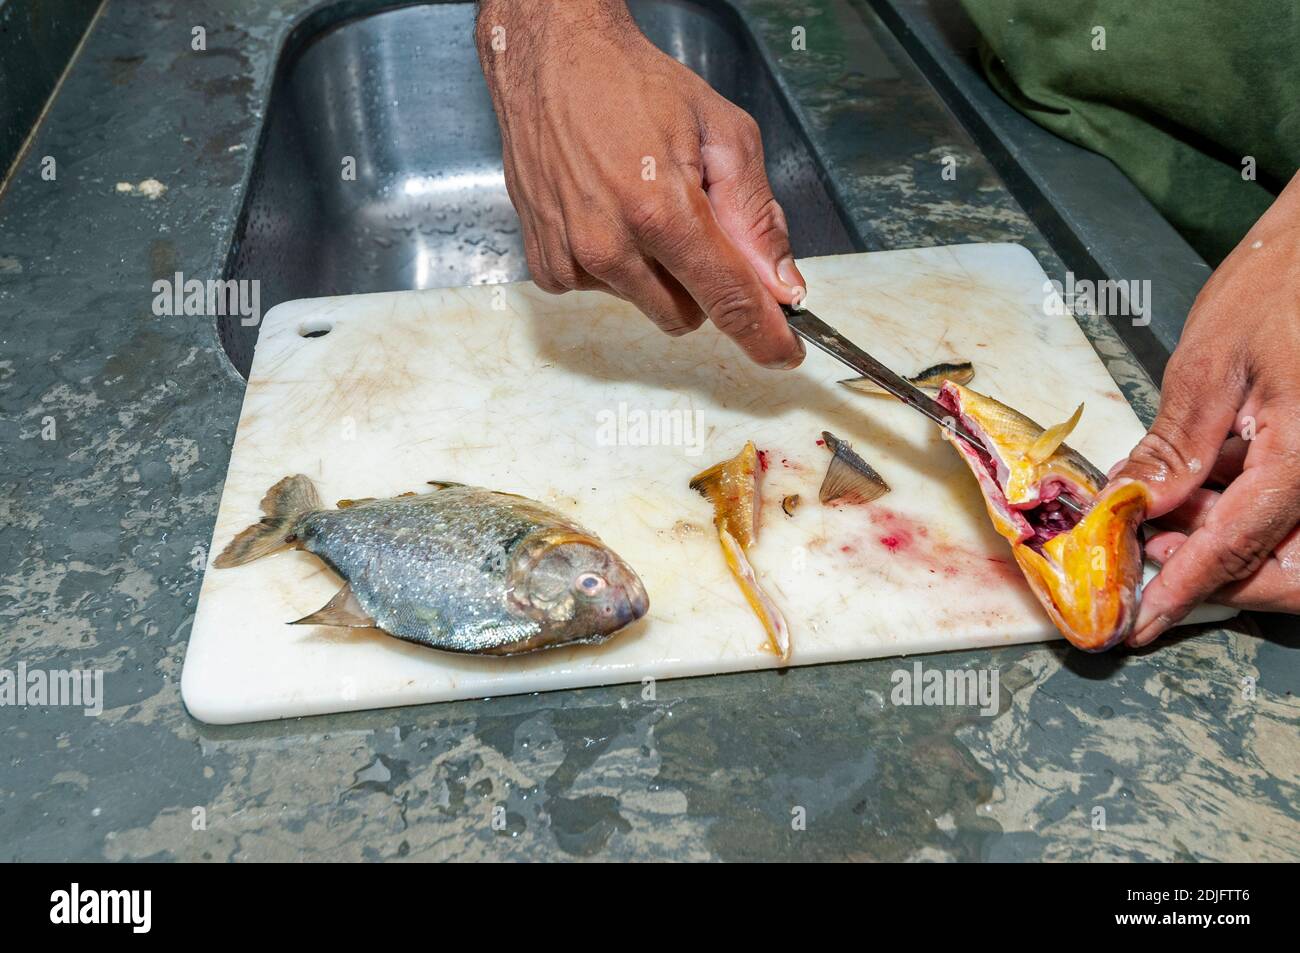 Un ayudante de cocina usando un cuchillo pequeño, llenando dos pirañas de vientre amarillo para una sopa en la cocina. La sopa piranha se sirve a los huéspedes que se alojen en un Foto de stock